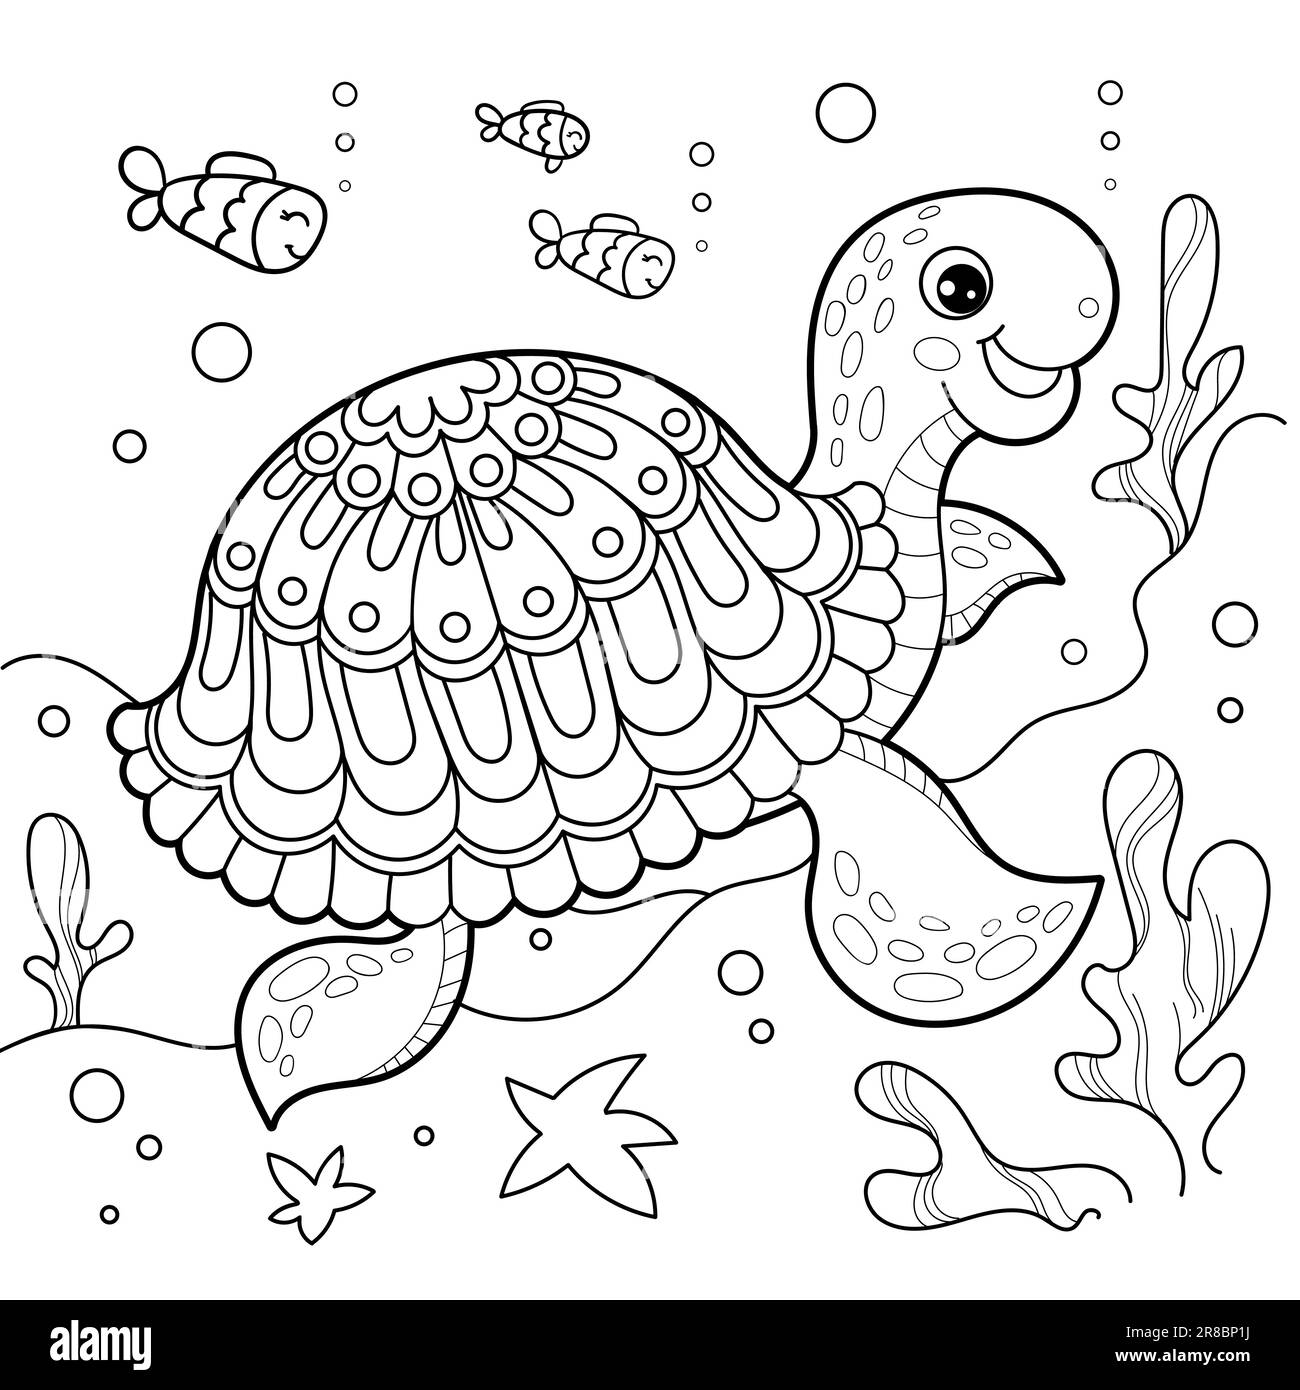 Tortue de mer gaie sous l'eau. Dessin linéaire noir et blanc. Pour la conception pour enfants de livres à colorier, imprimés, affiches, cartes, autocollants, casse-têtes, et Illustration de Vecteur